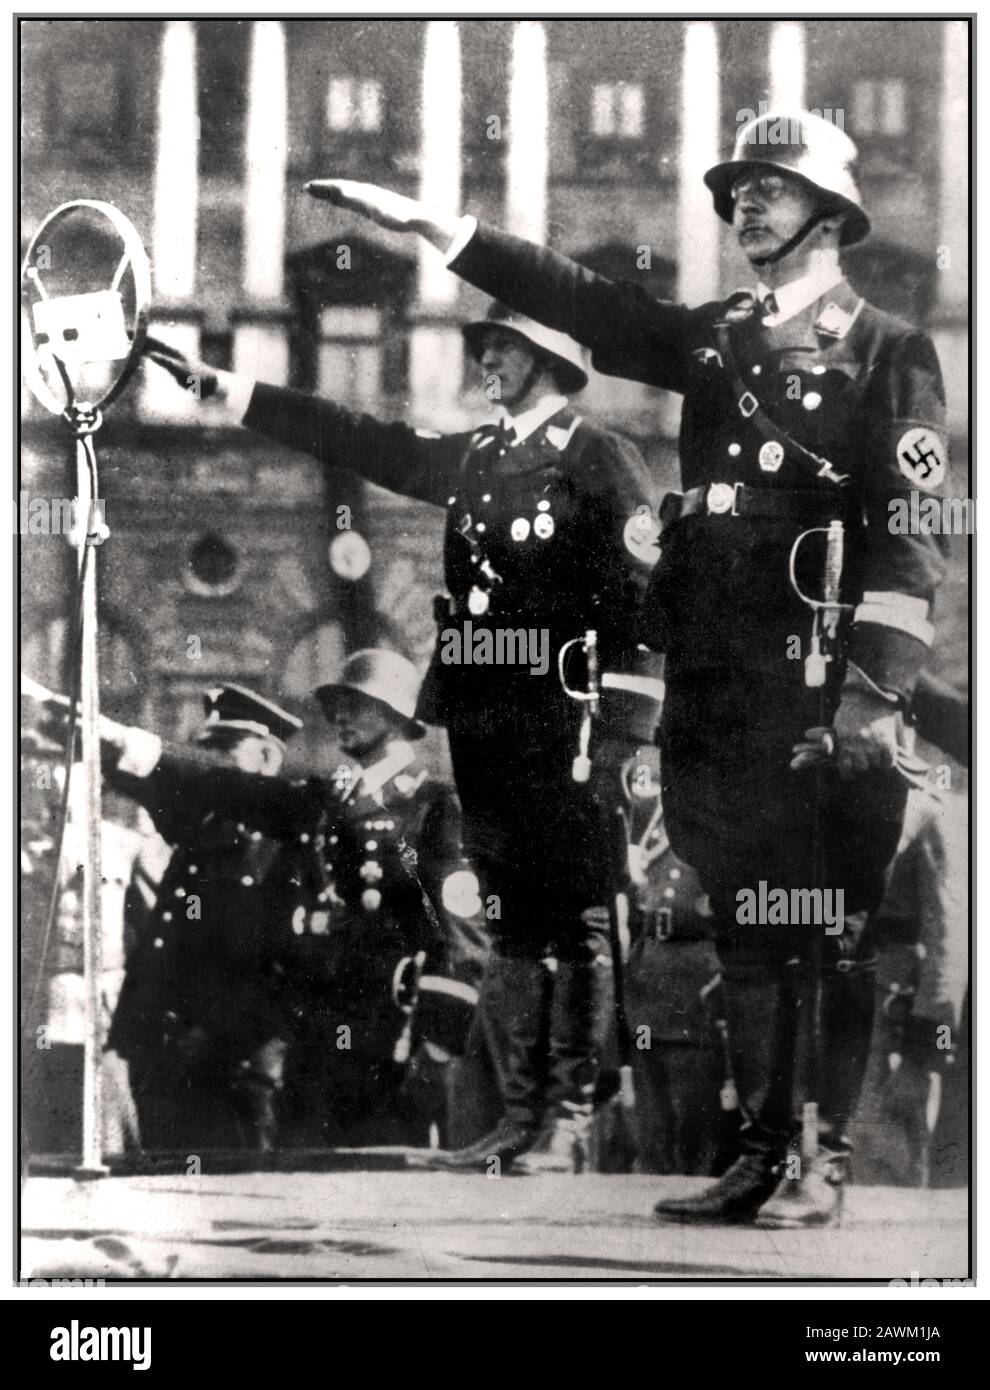 Pre WW2 1940's Heinrich Himmler Reichsfuhrer-SS tedesco nazista in full SS uniforme indossando swastika bracciale, prende il saluto ad una parata durante Anchluss. Vienna Austria, 17 Marzo 1938. Foto Stock